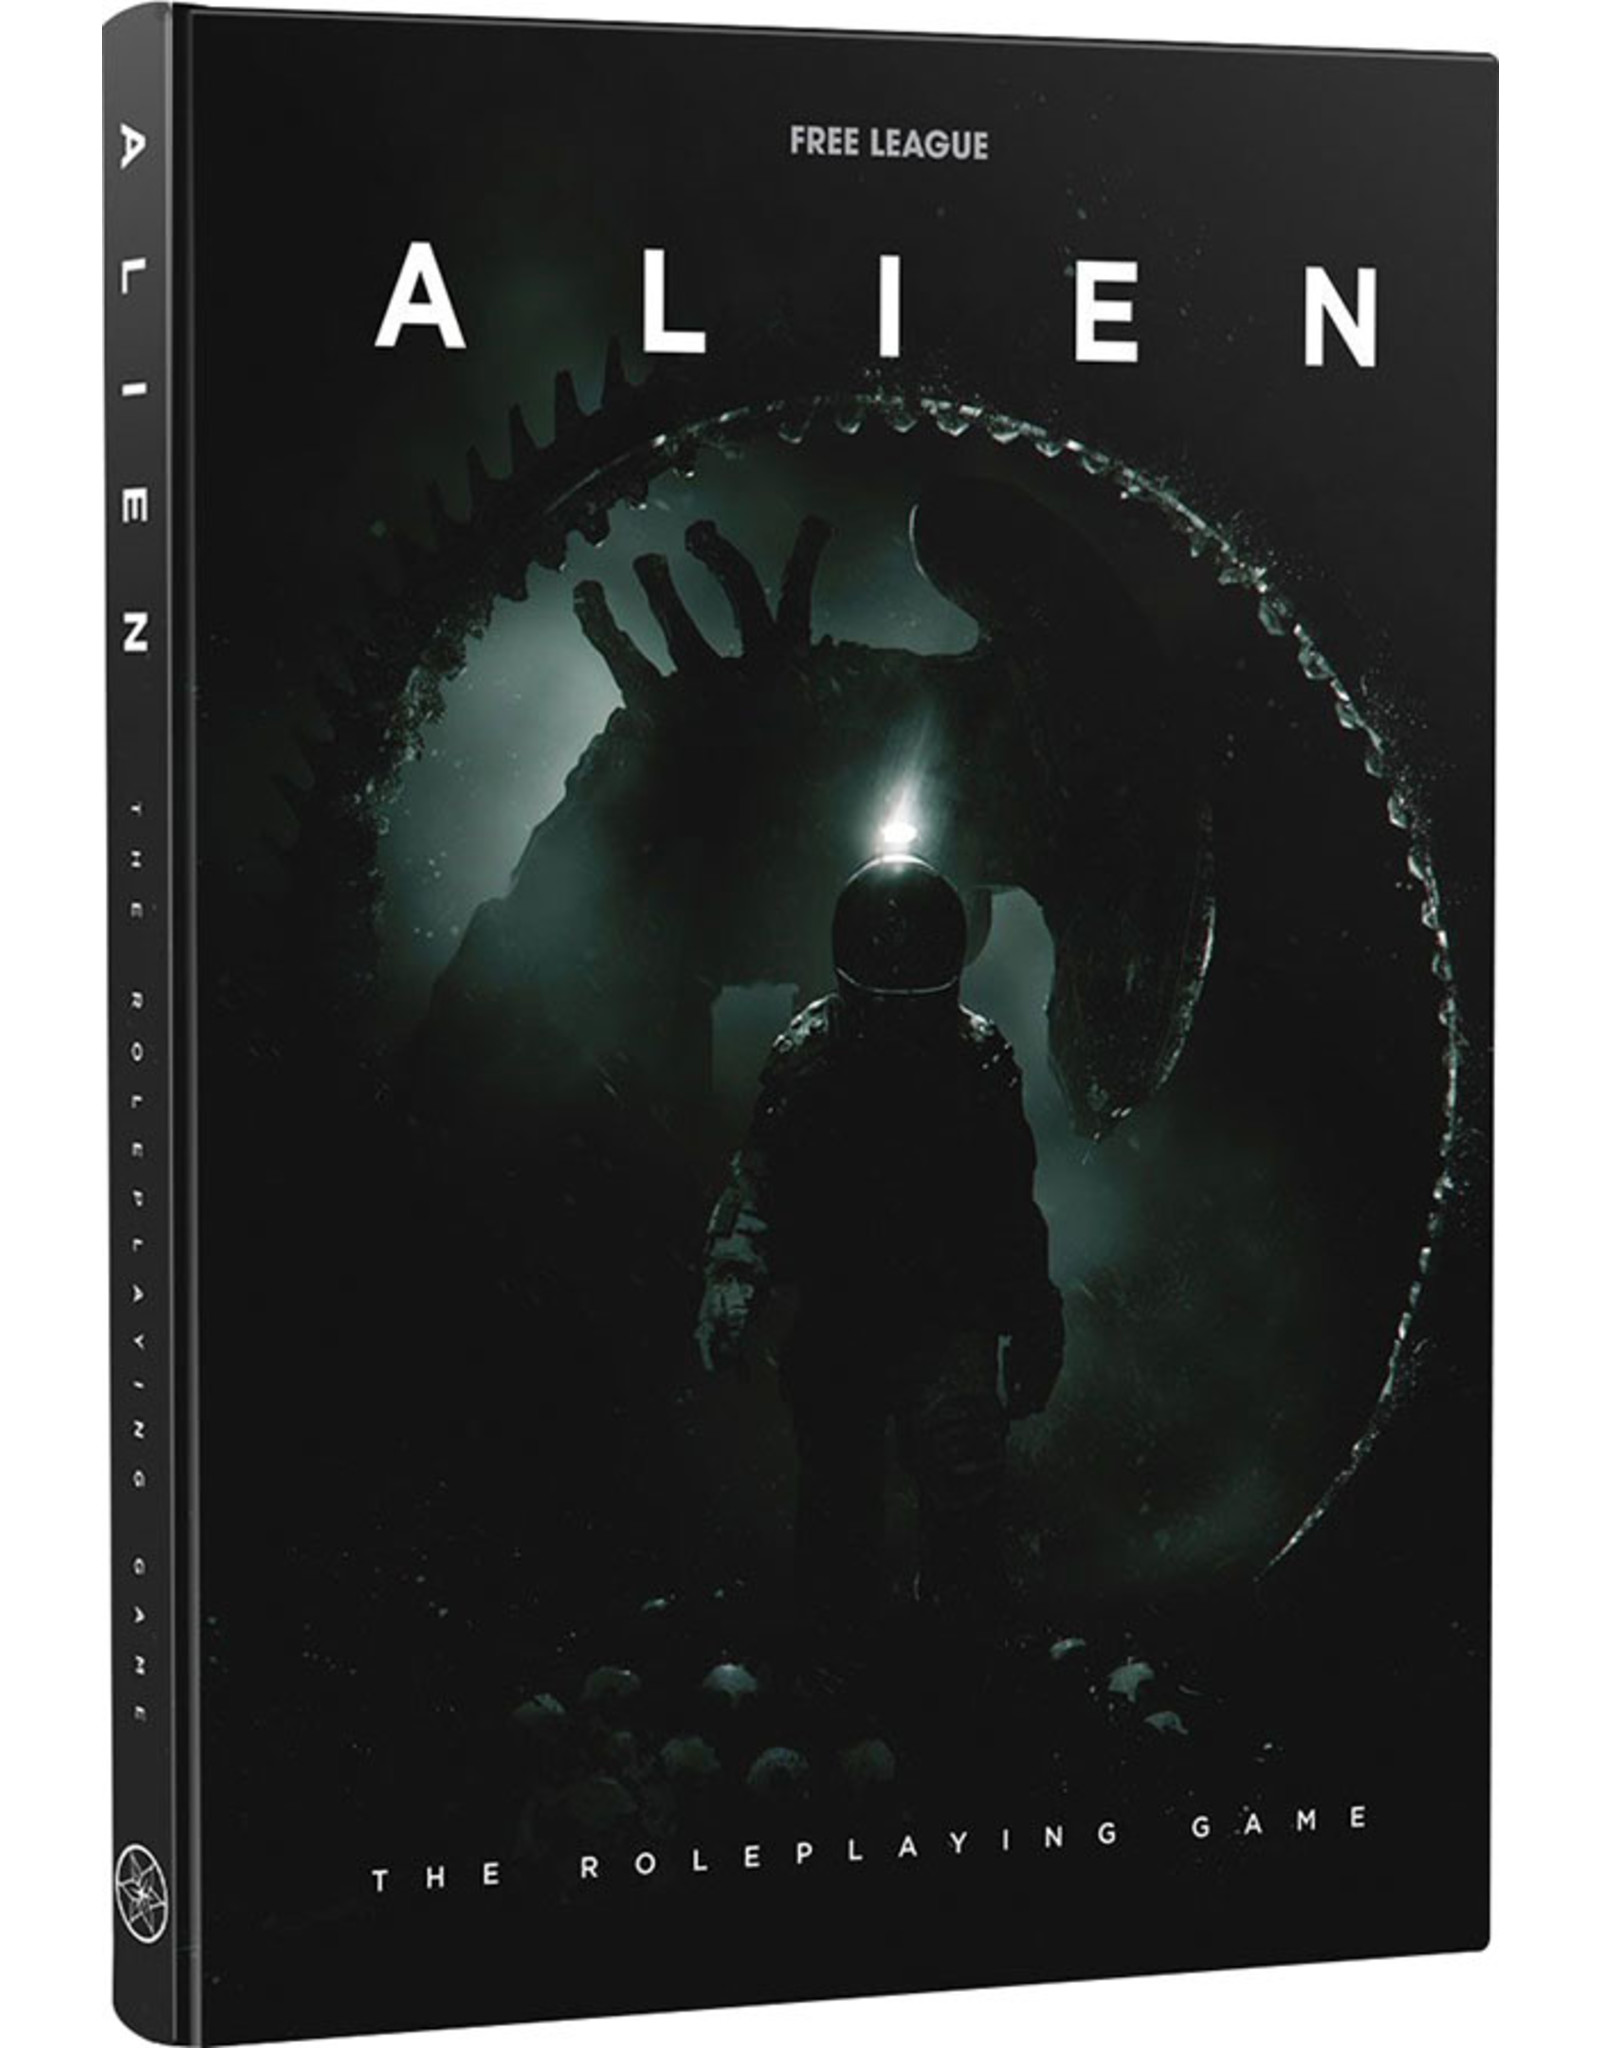 Free League Publishing Alien RPG